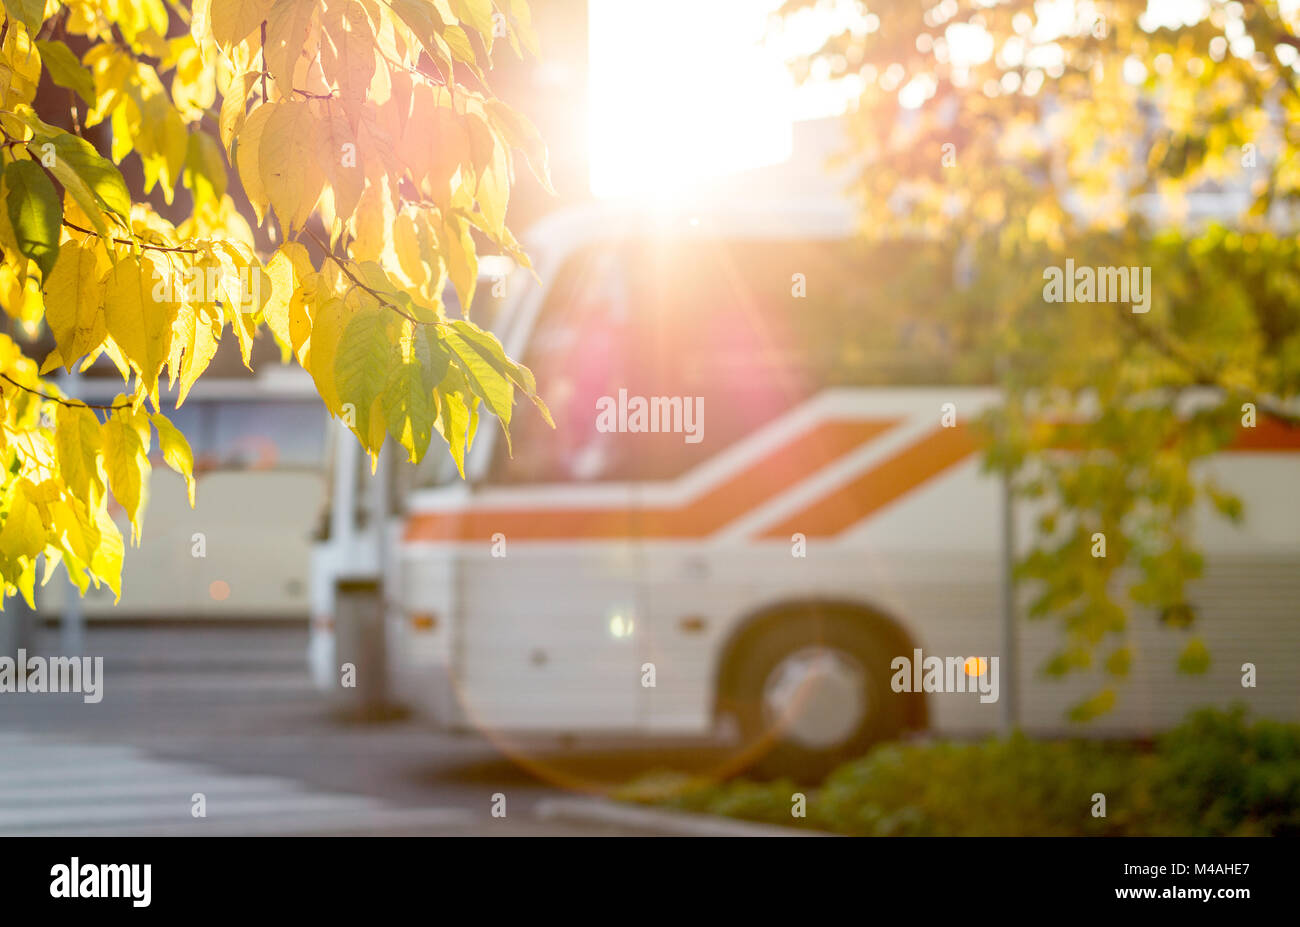 À la station de bus encadré par des feuilles couleur d'automne des arbres. Concept de transport public ensoleillé. Banque D'Images